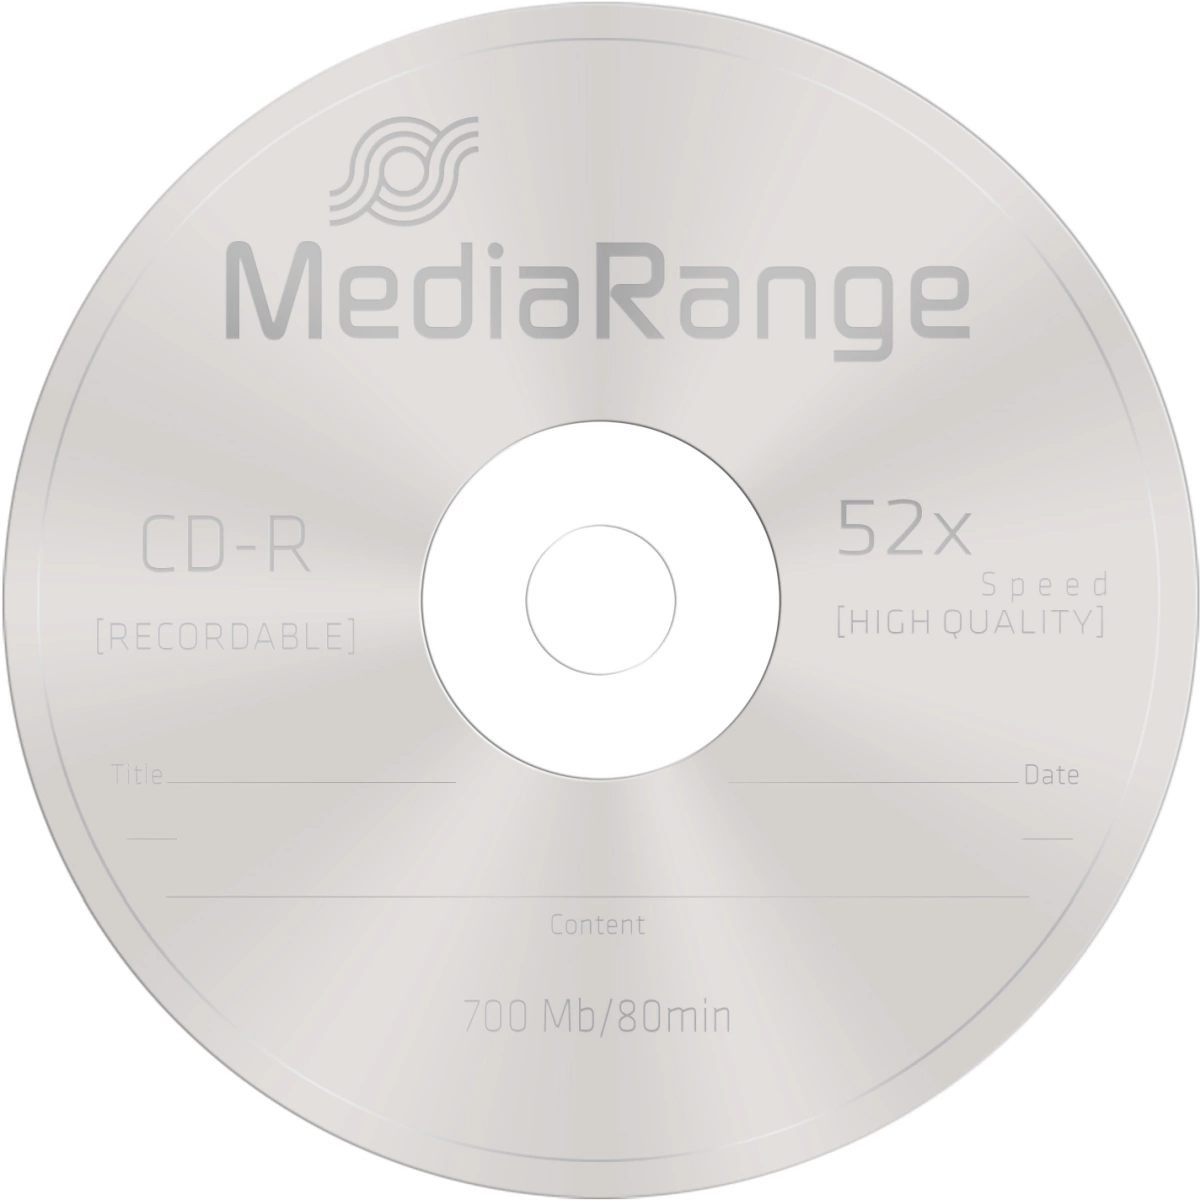 CD-R Rohlinge - 700MB/80Min, 52-fach/Spindel, Packung mit 25 Stück